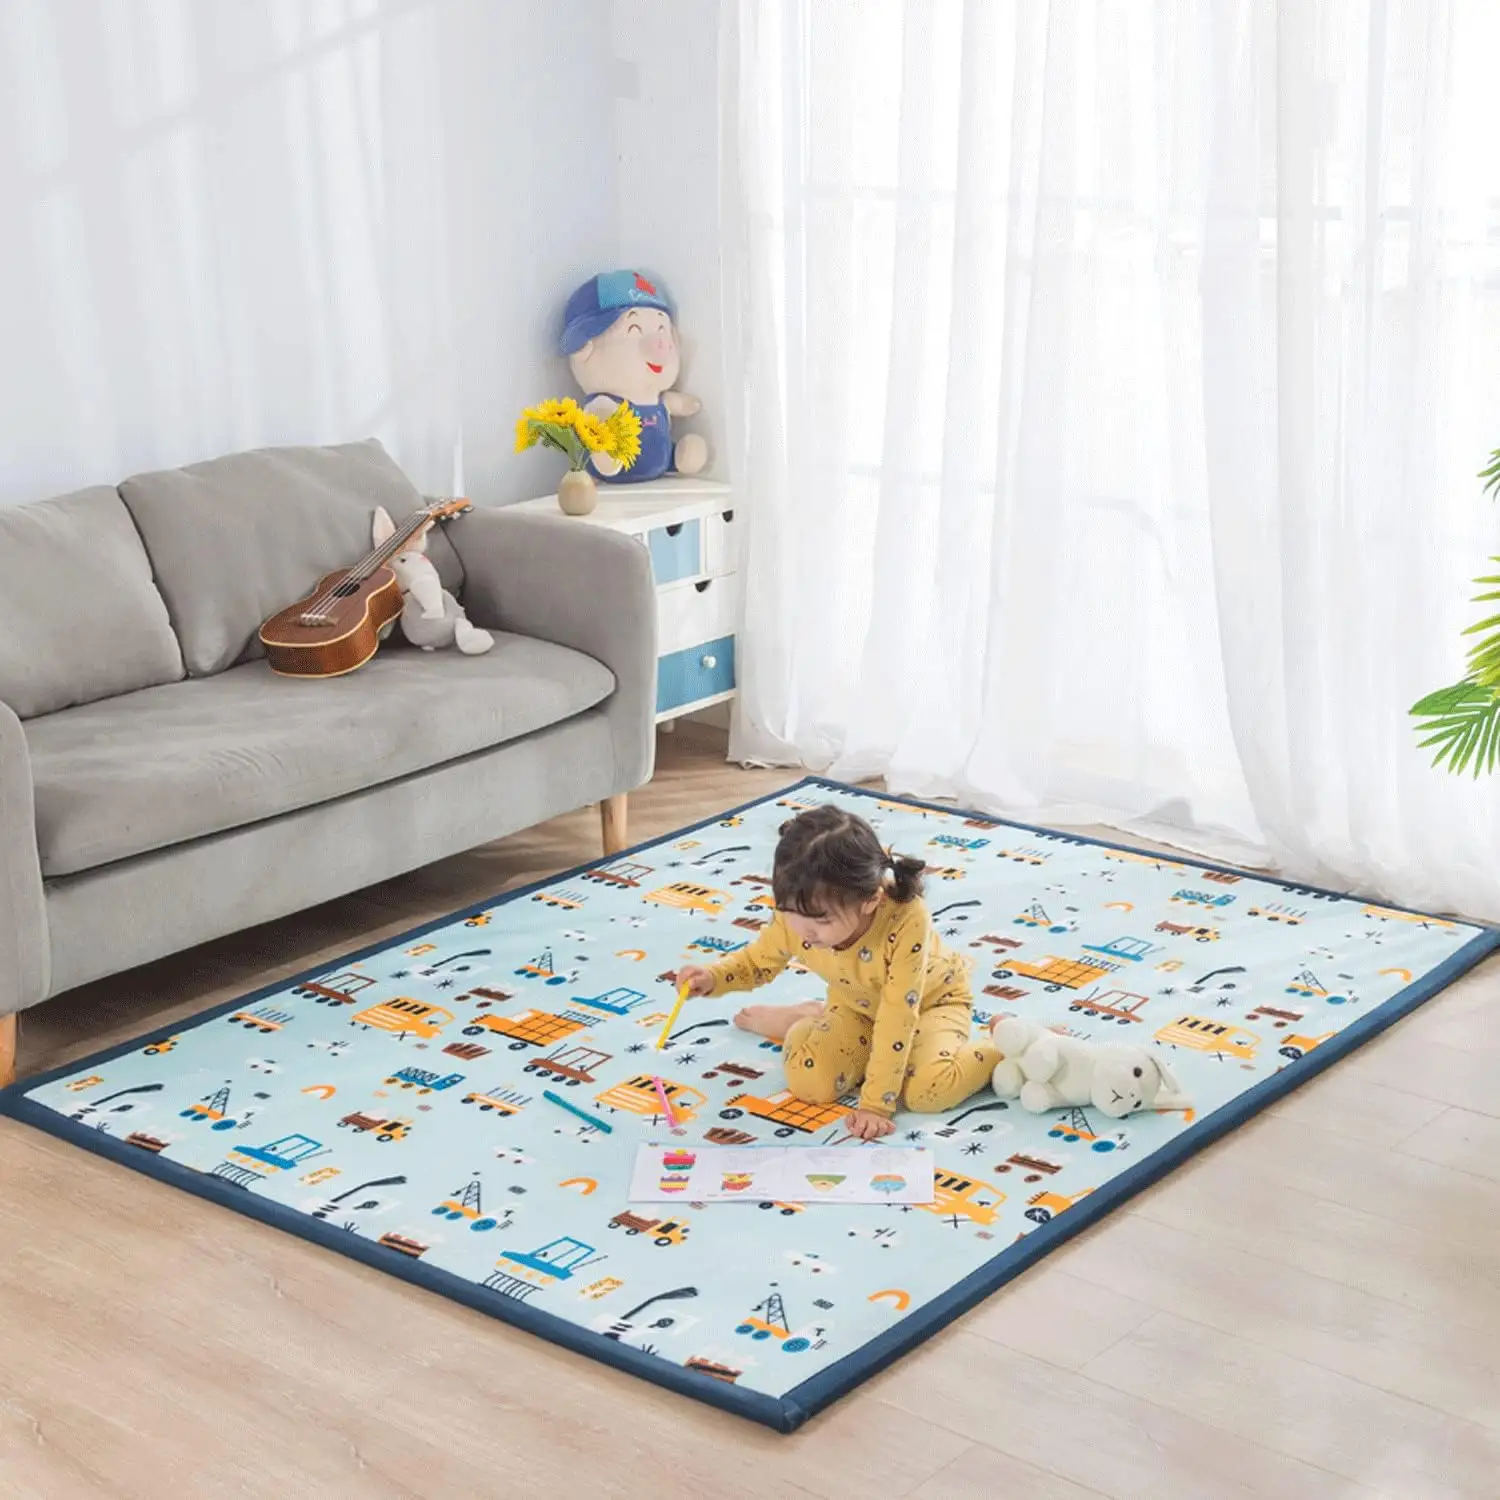 FMT personalizzato Extra Large tappeto Tatami giapponese tappetino muscolare Memory Foam 35mm di spessore con moquette